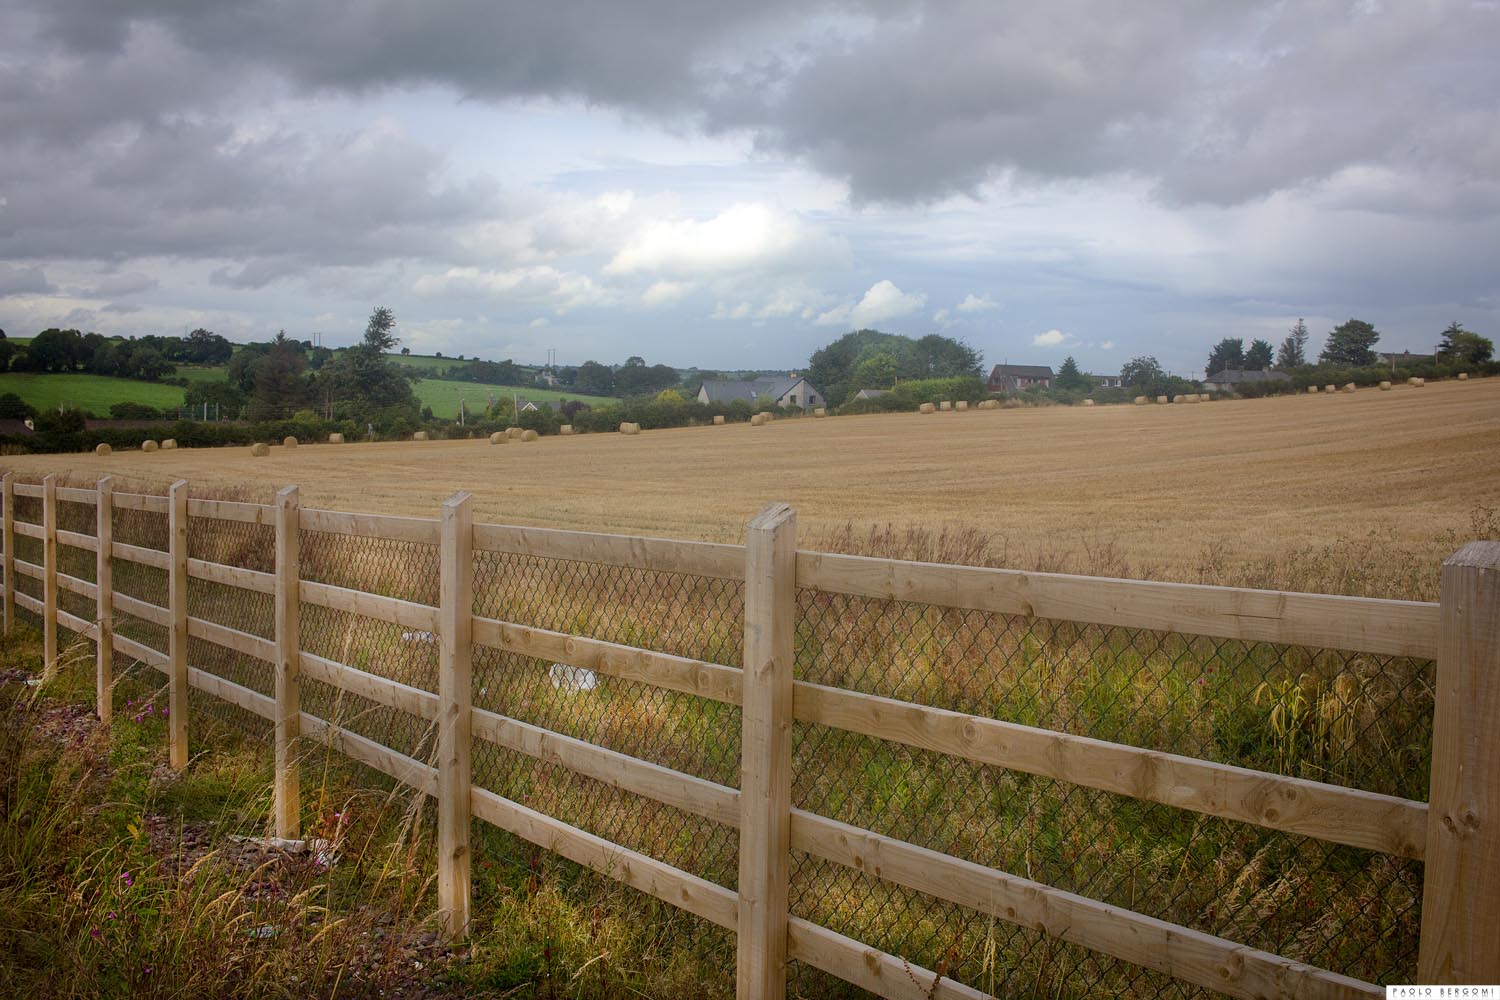 A dieci minuti di auto dal centro di Cork (1 ora e mezzo a piedi) si trovano campi e colline che fanno sognare...